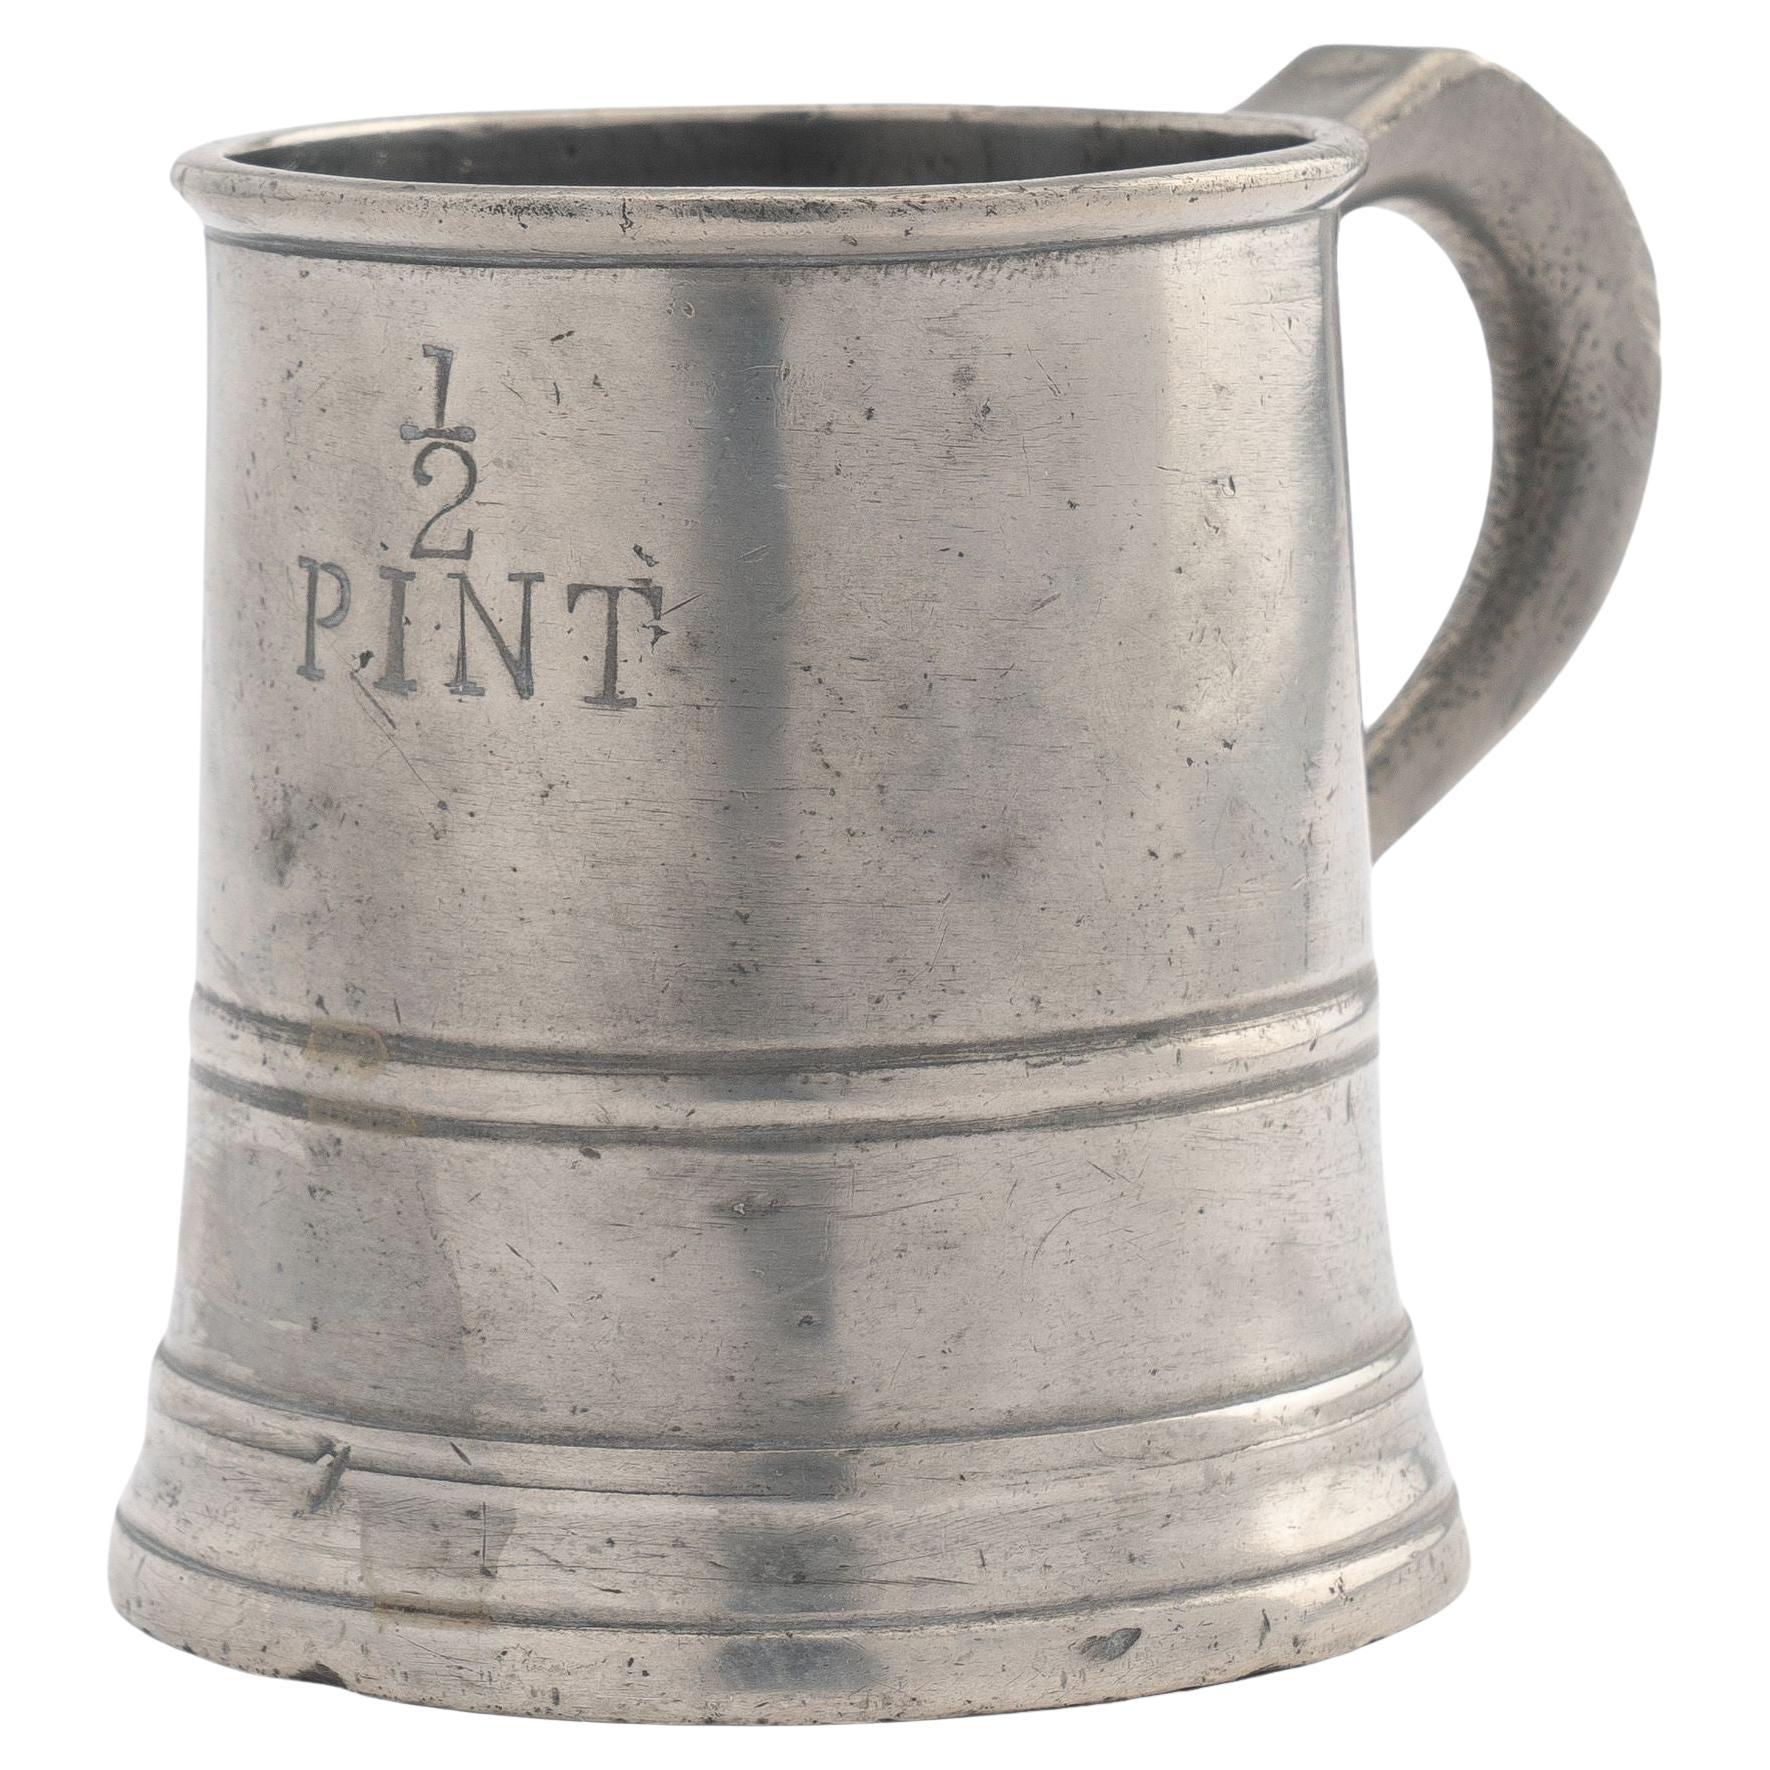 English pewter Half Pint mug, c. 1800's